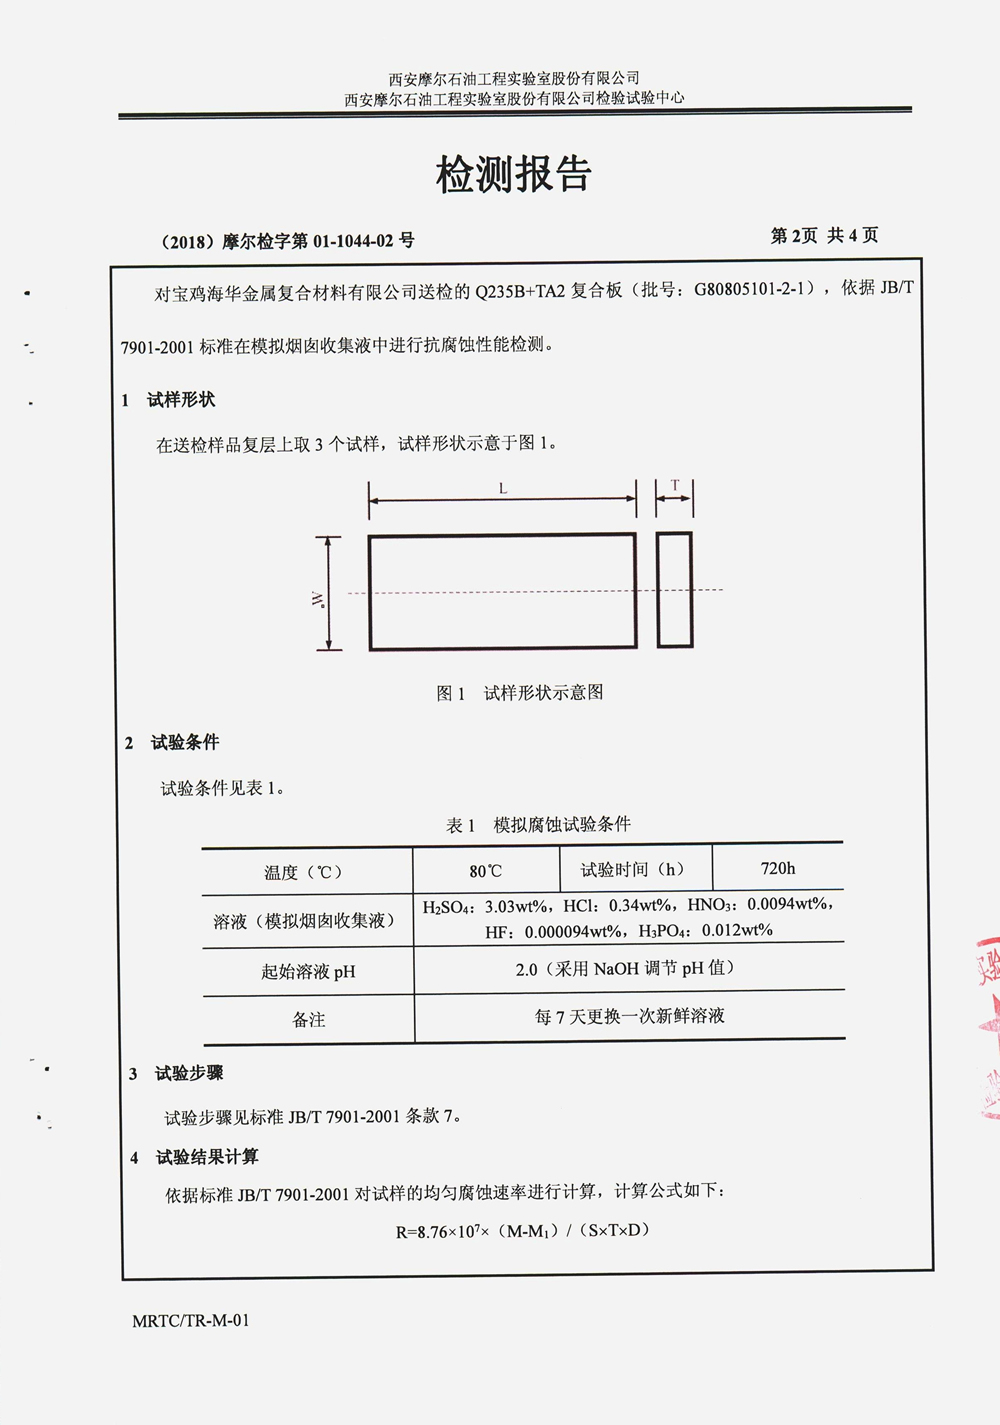 摩尔实验室报告-烟囱收集液抗腐 -中文 (3)